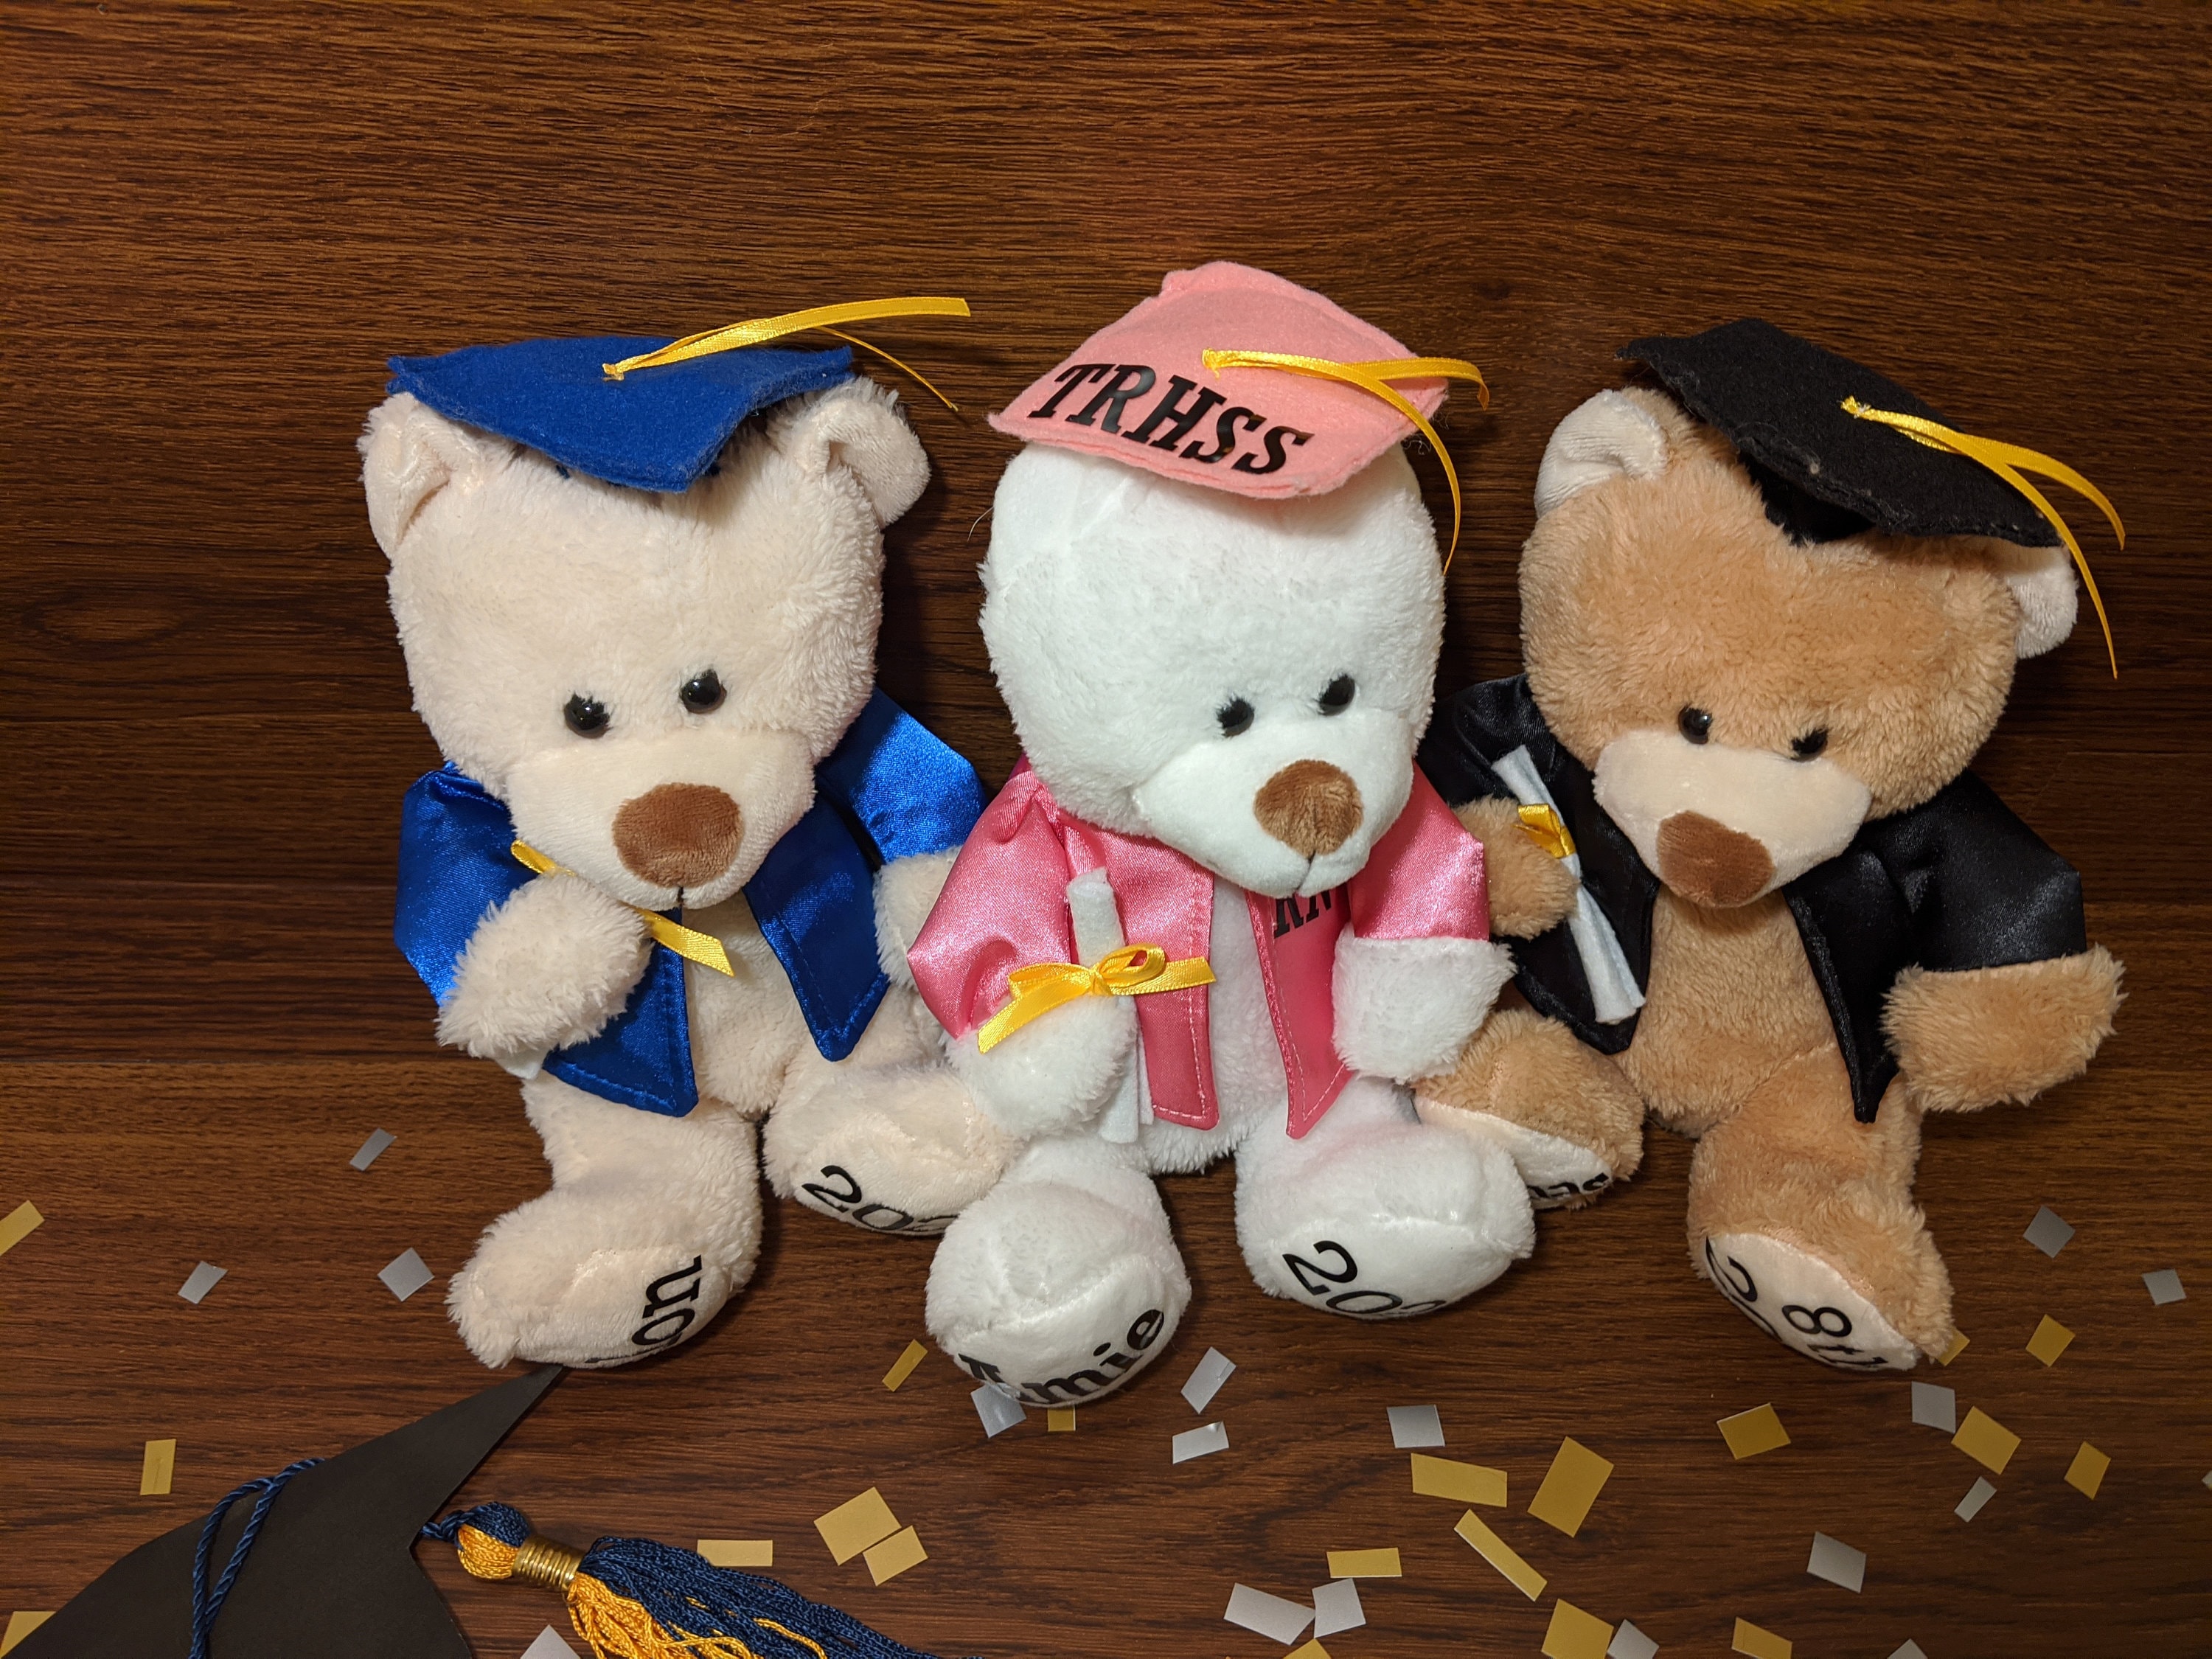 Graduation Teddy Bear Personalized Plush High School College Etsy